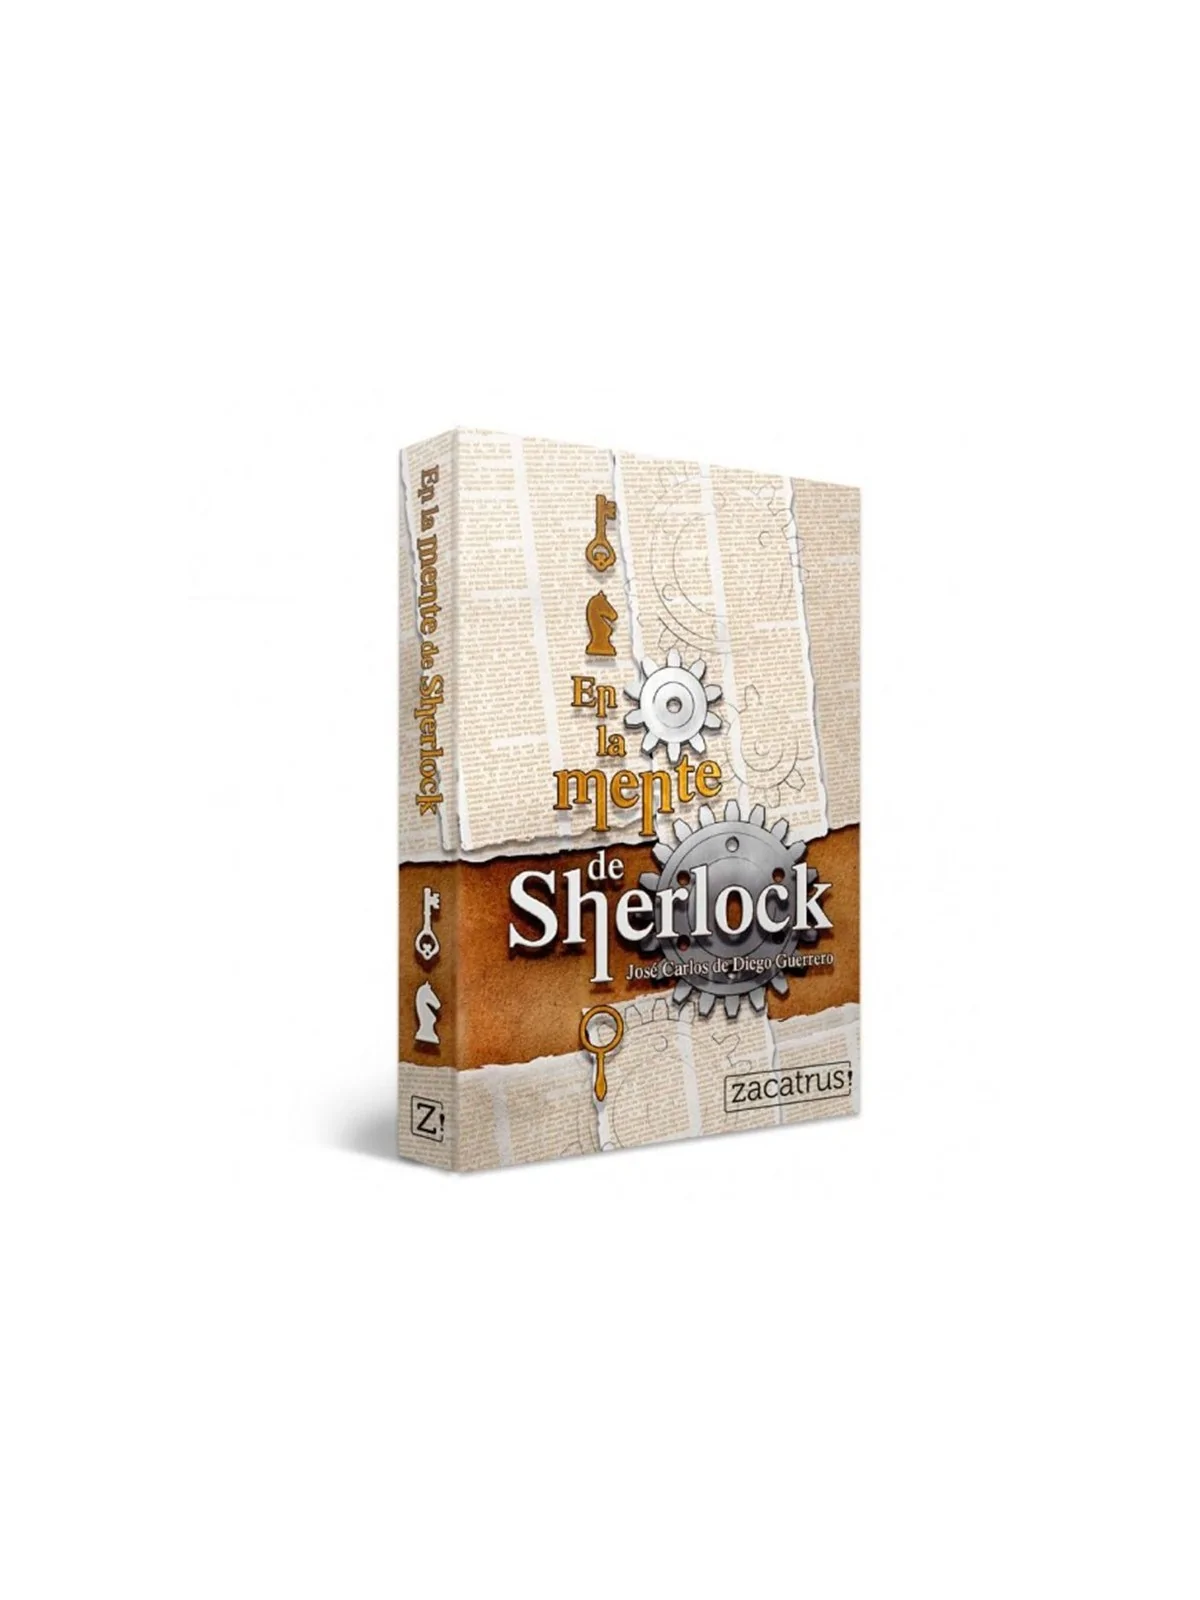 Comprar En la Mente de Sherlock barato al mejor precio 7,16 € de Zacat